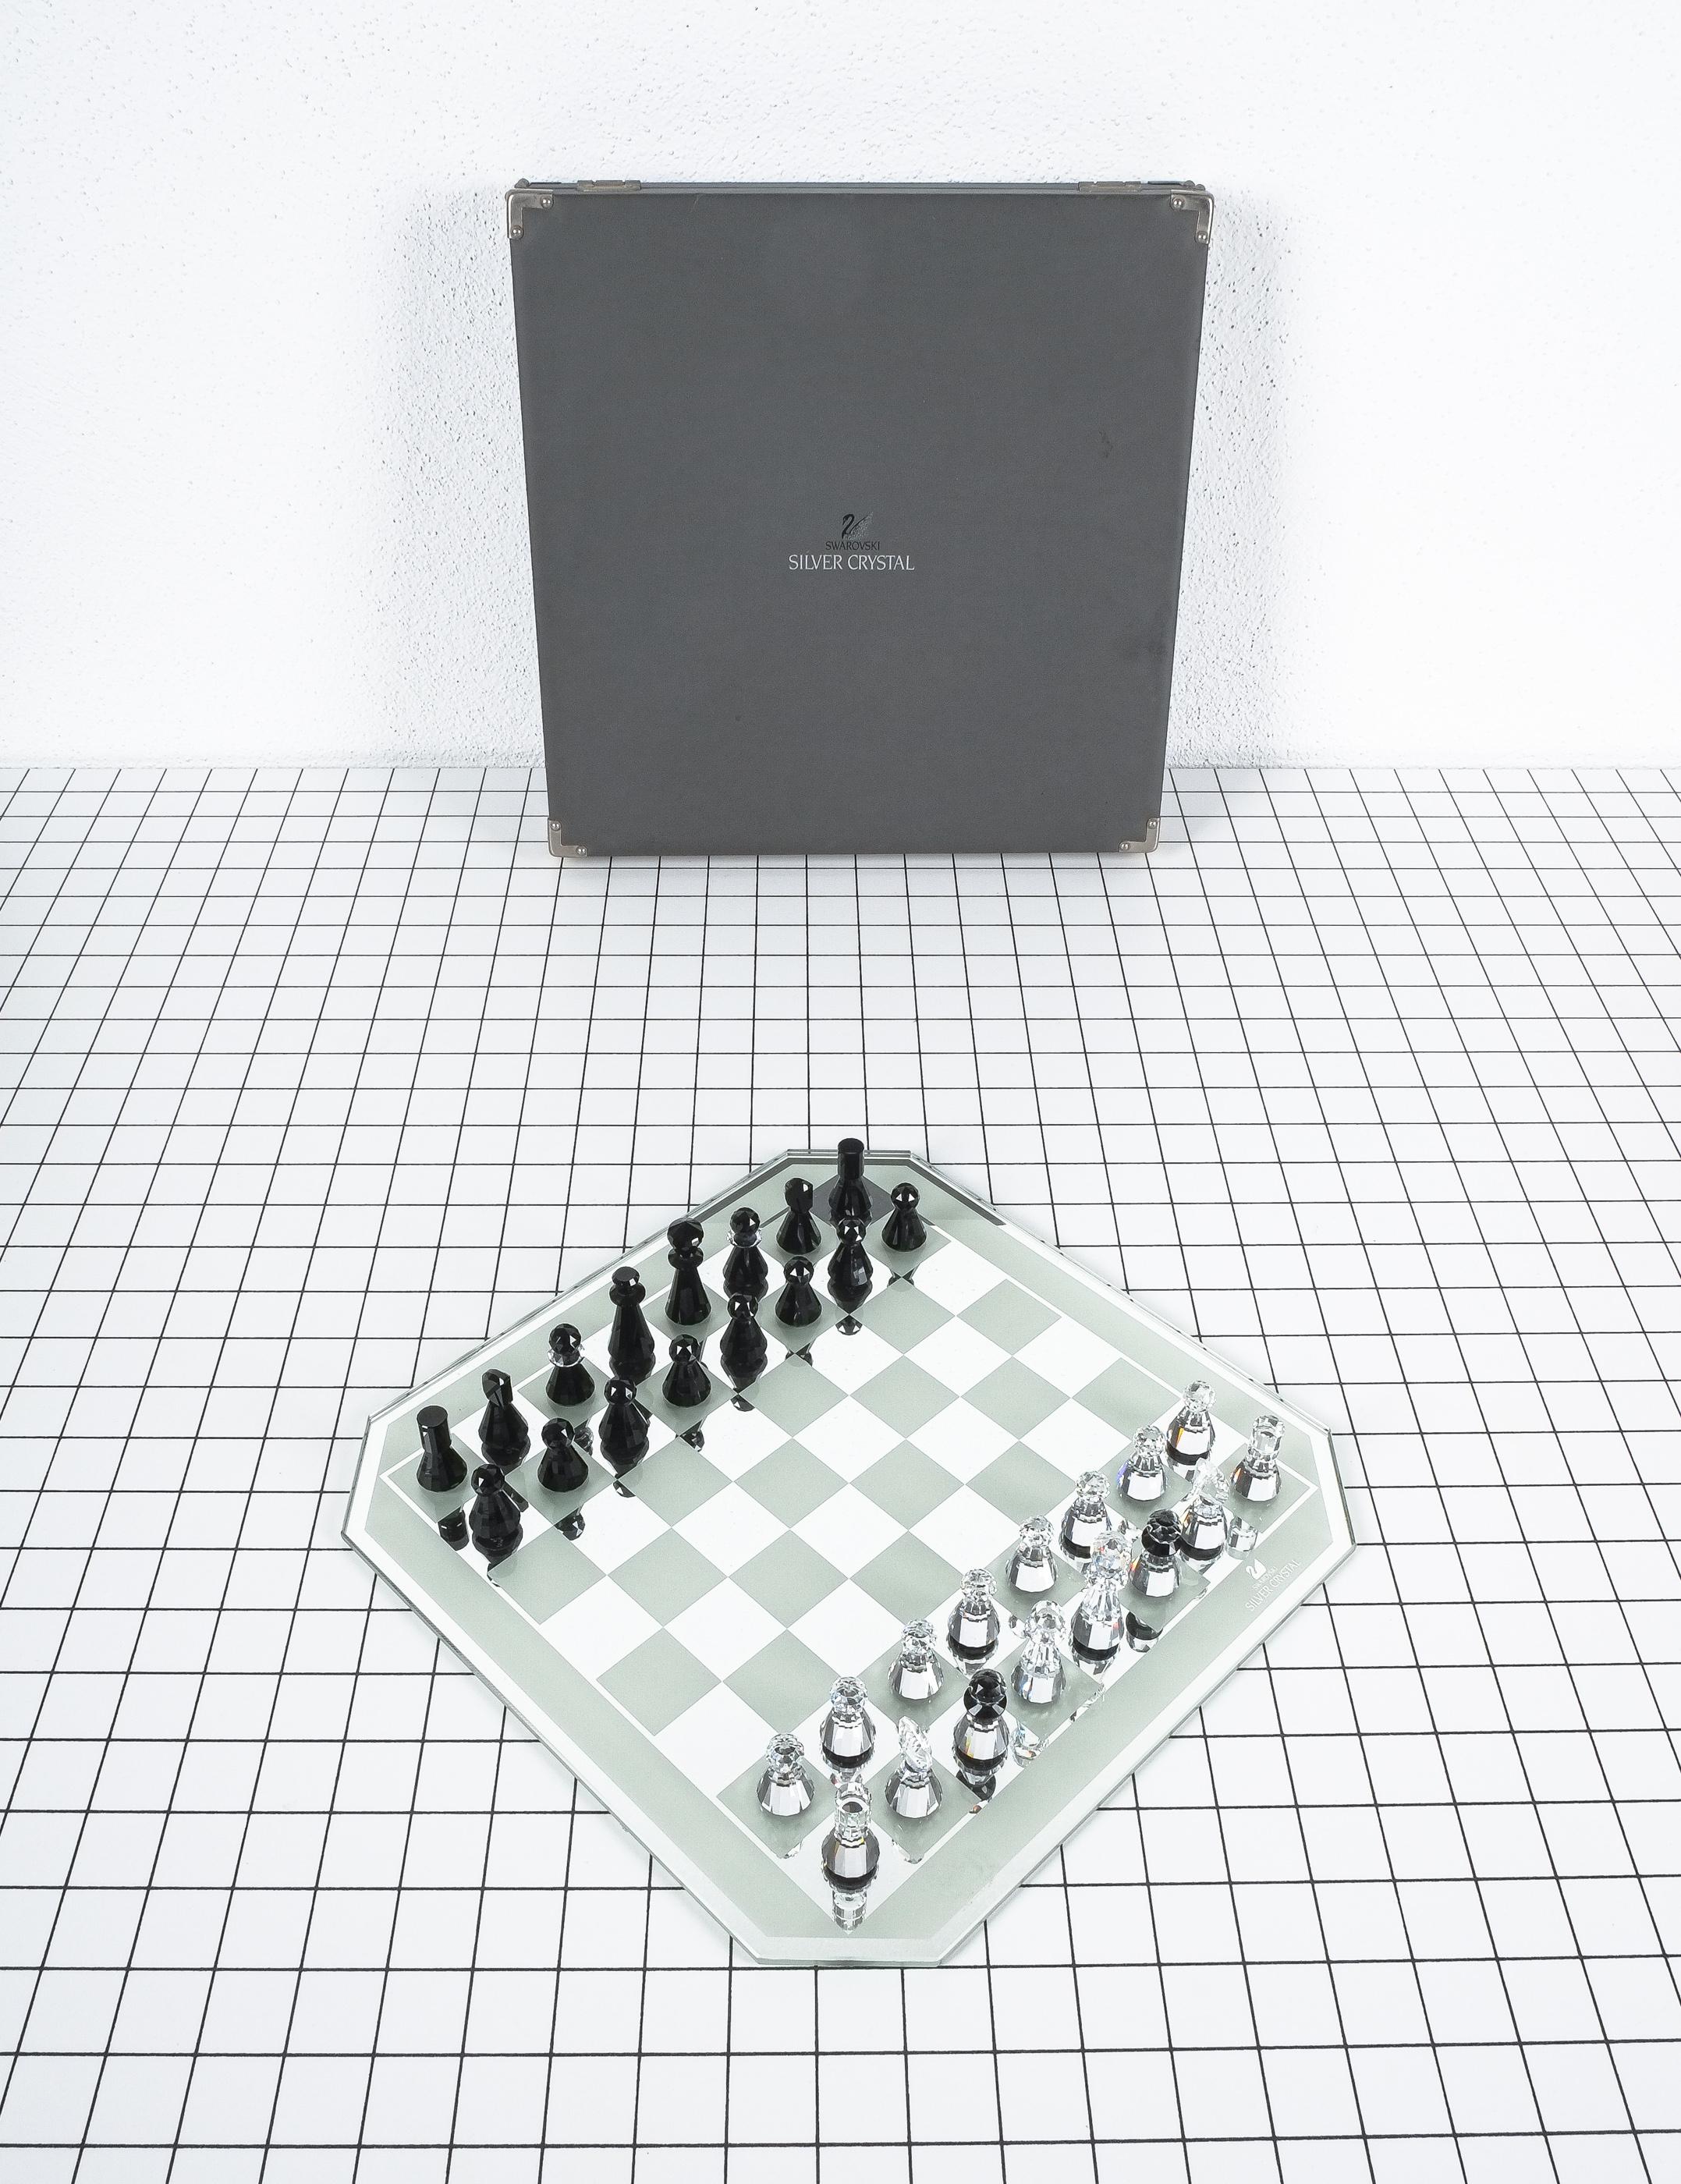 swarovski chess set silver crystal 04 master